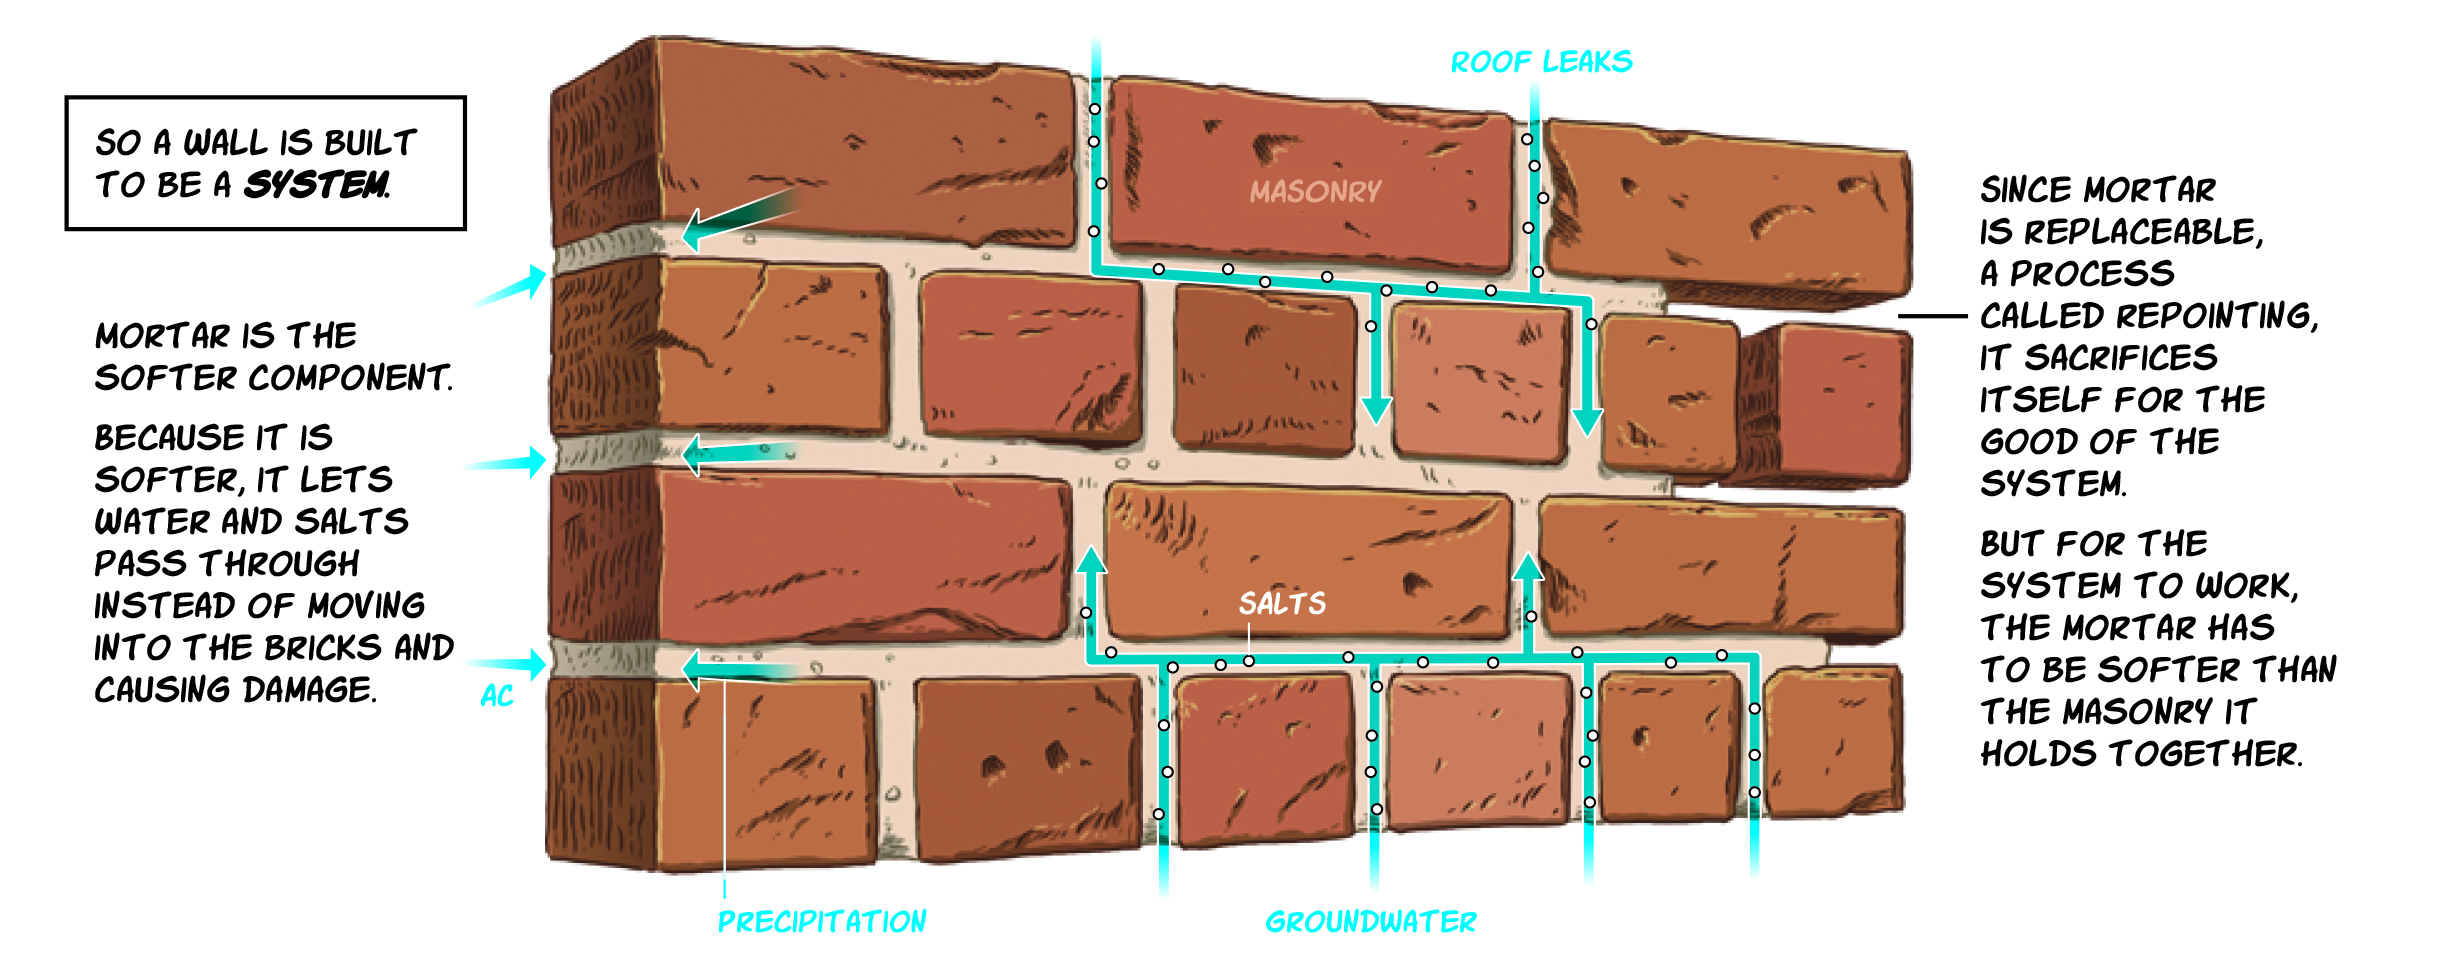 Bricks and Mortar